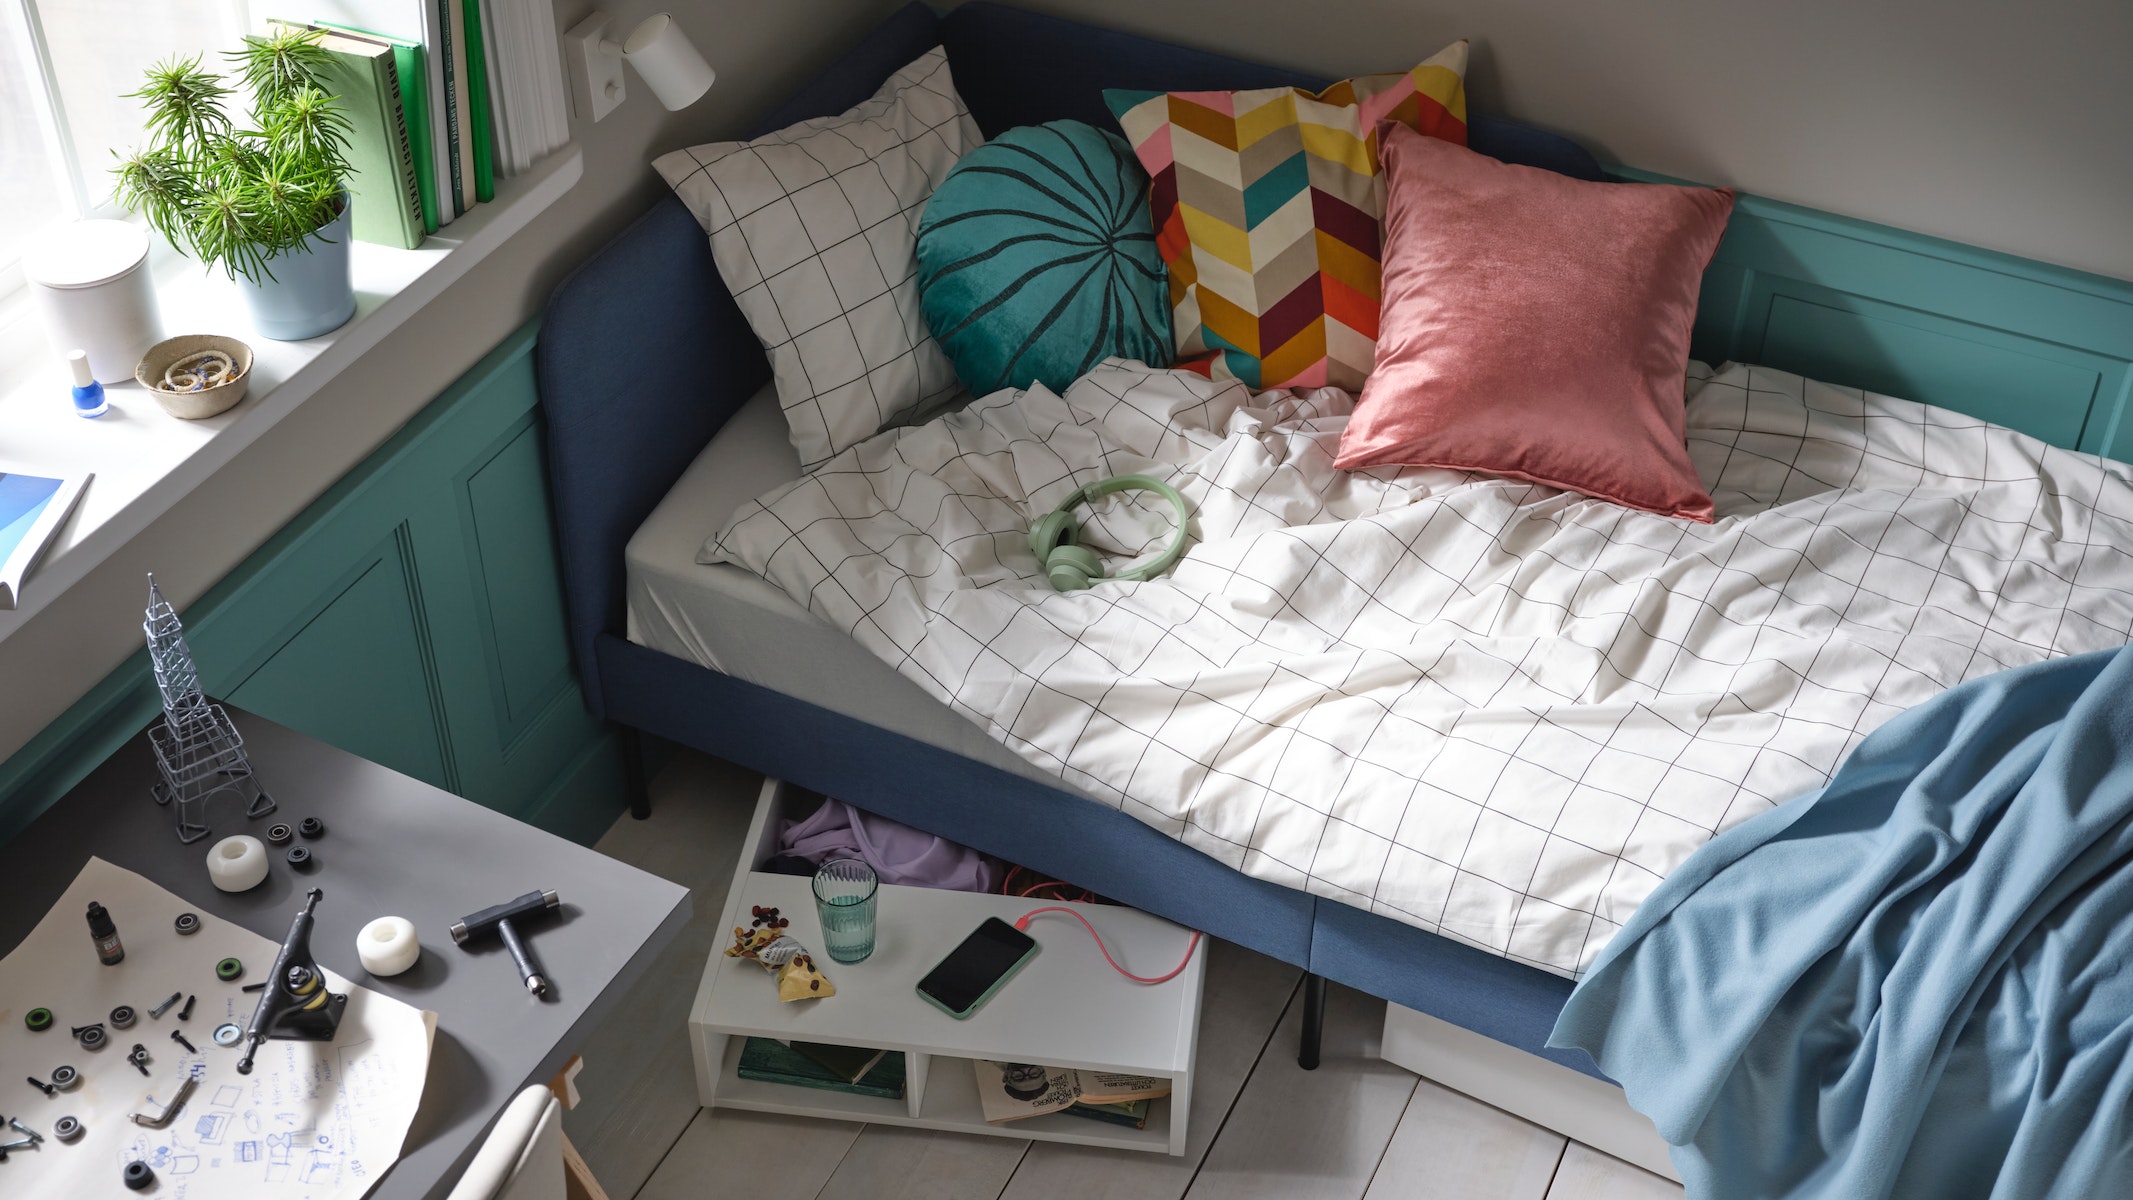 Η ΙΚΕΑ προτείνει ιδέες και έξυπνες λύσεις για το εφηβικό υπνοδωμάτιο.